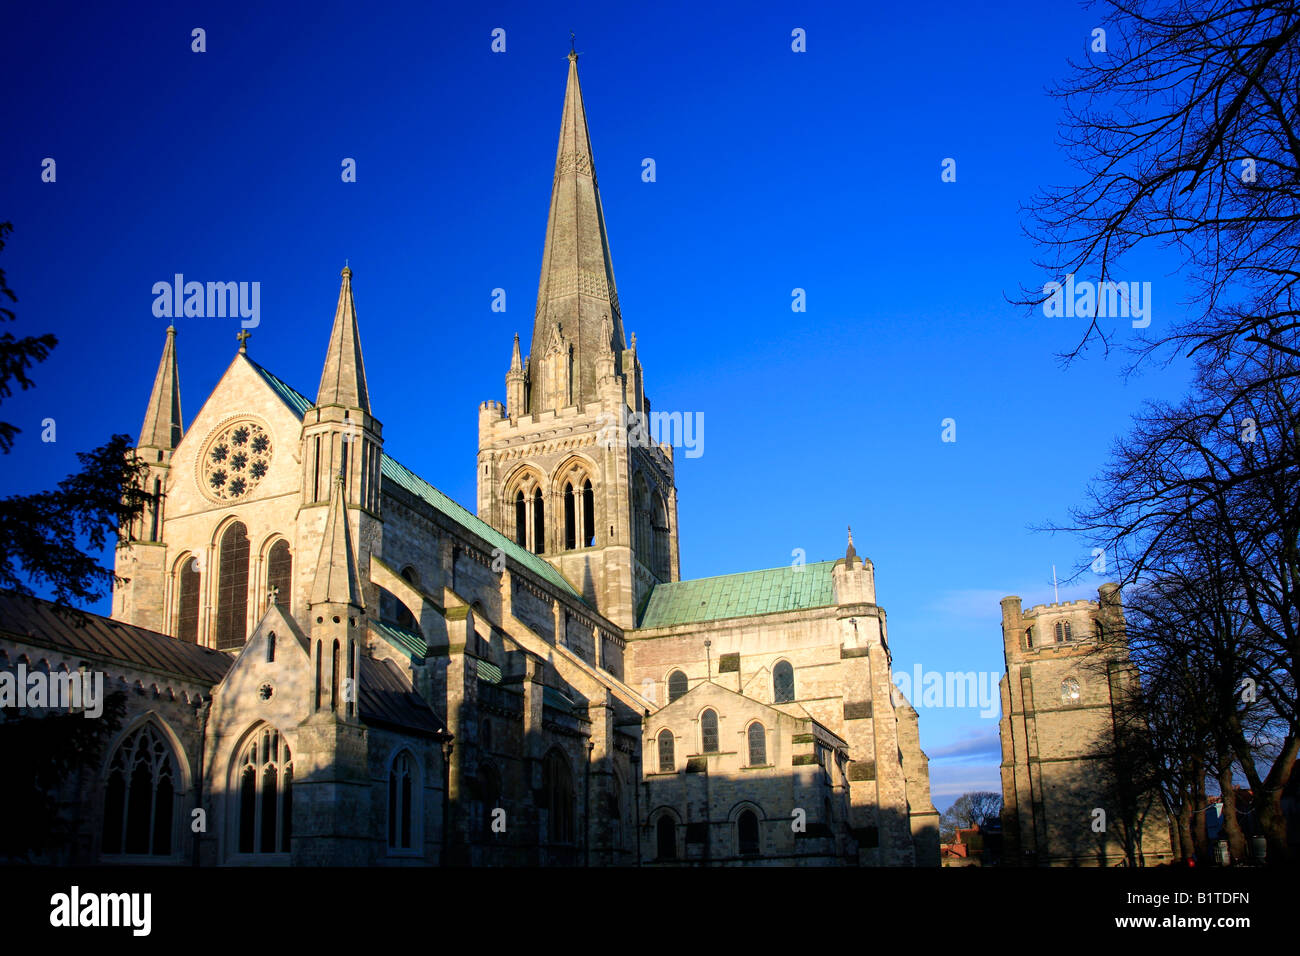 Les élévations nord et est la Cathédrale de Chichester Chichester City West Sussex England Angleterre UK Banque D'Images